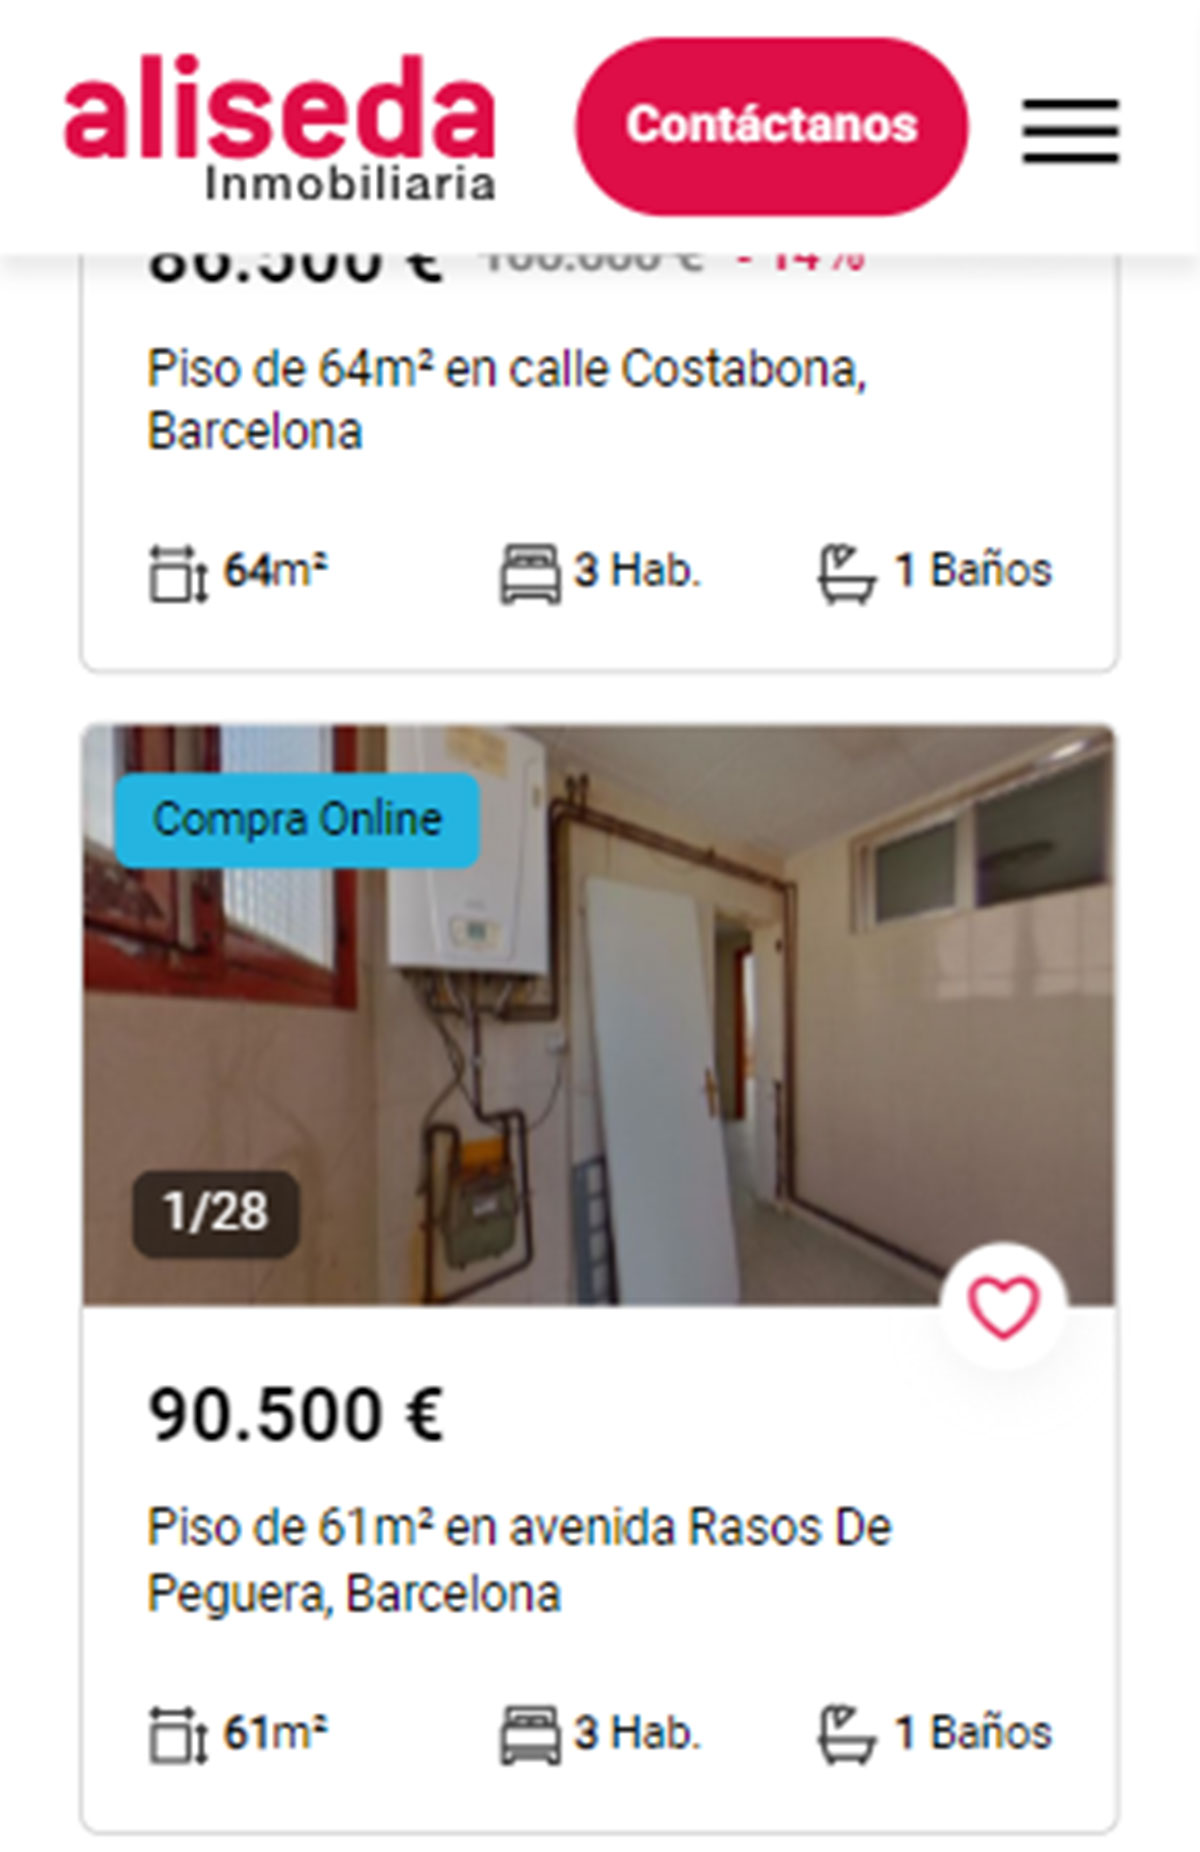 Piso en Barcelona por 90.500 euros